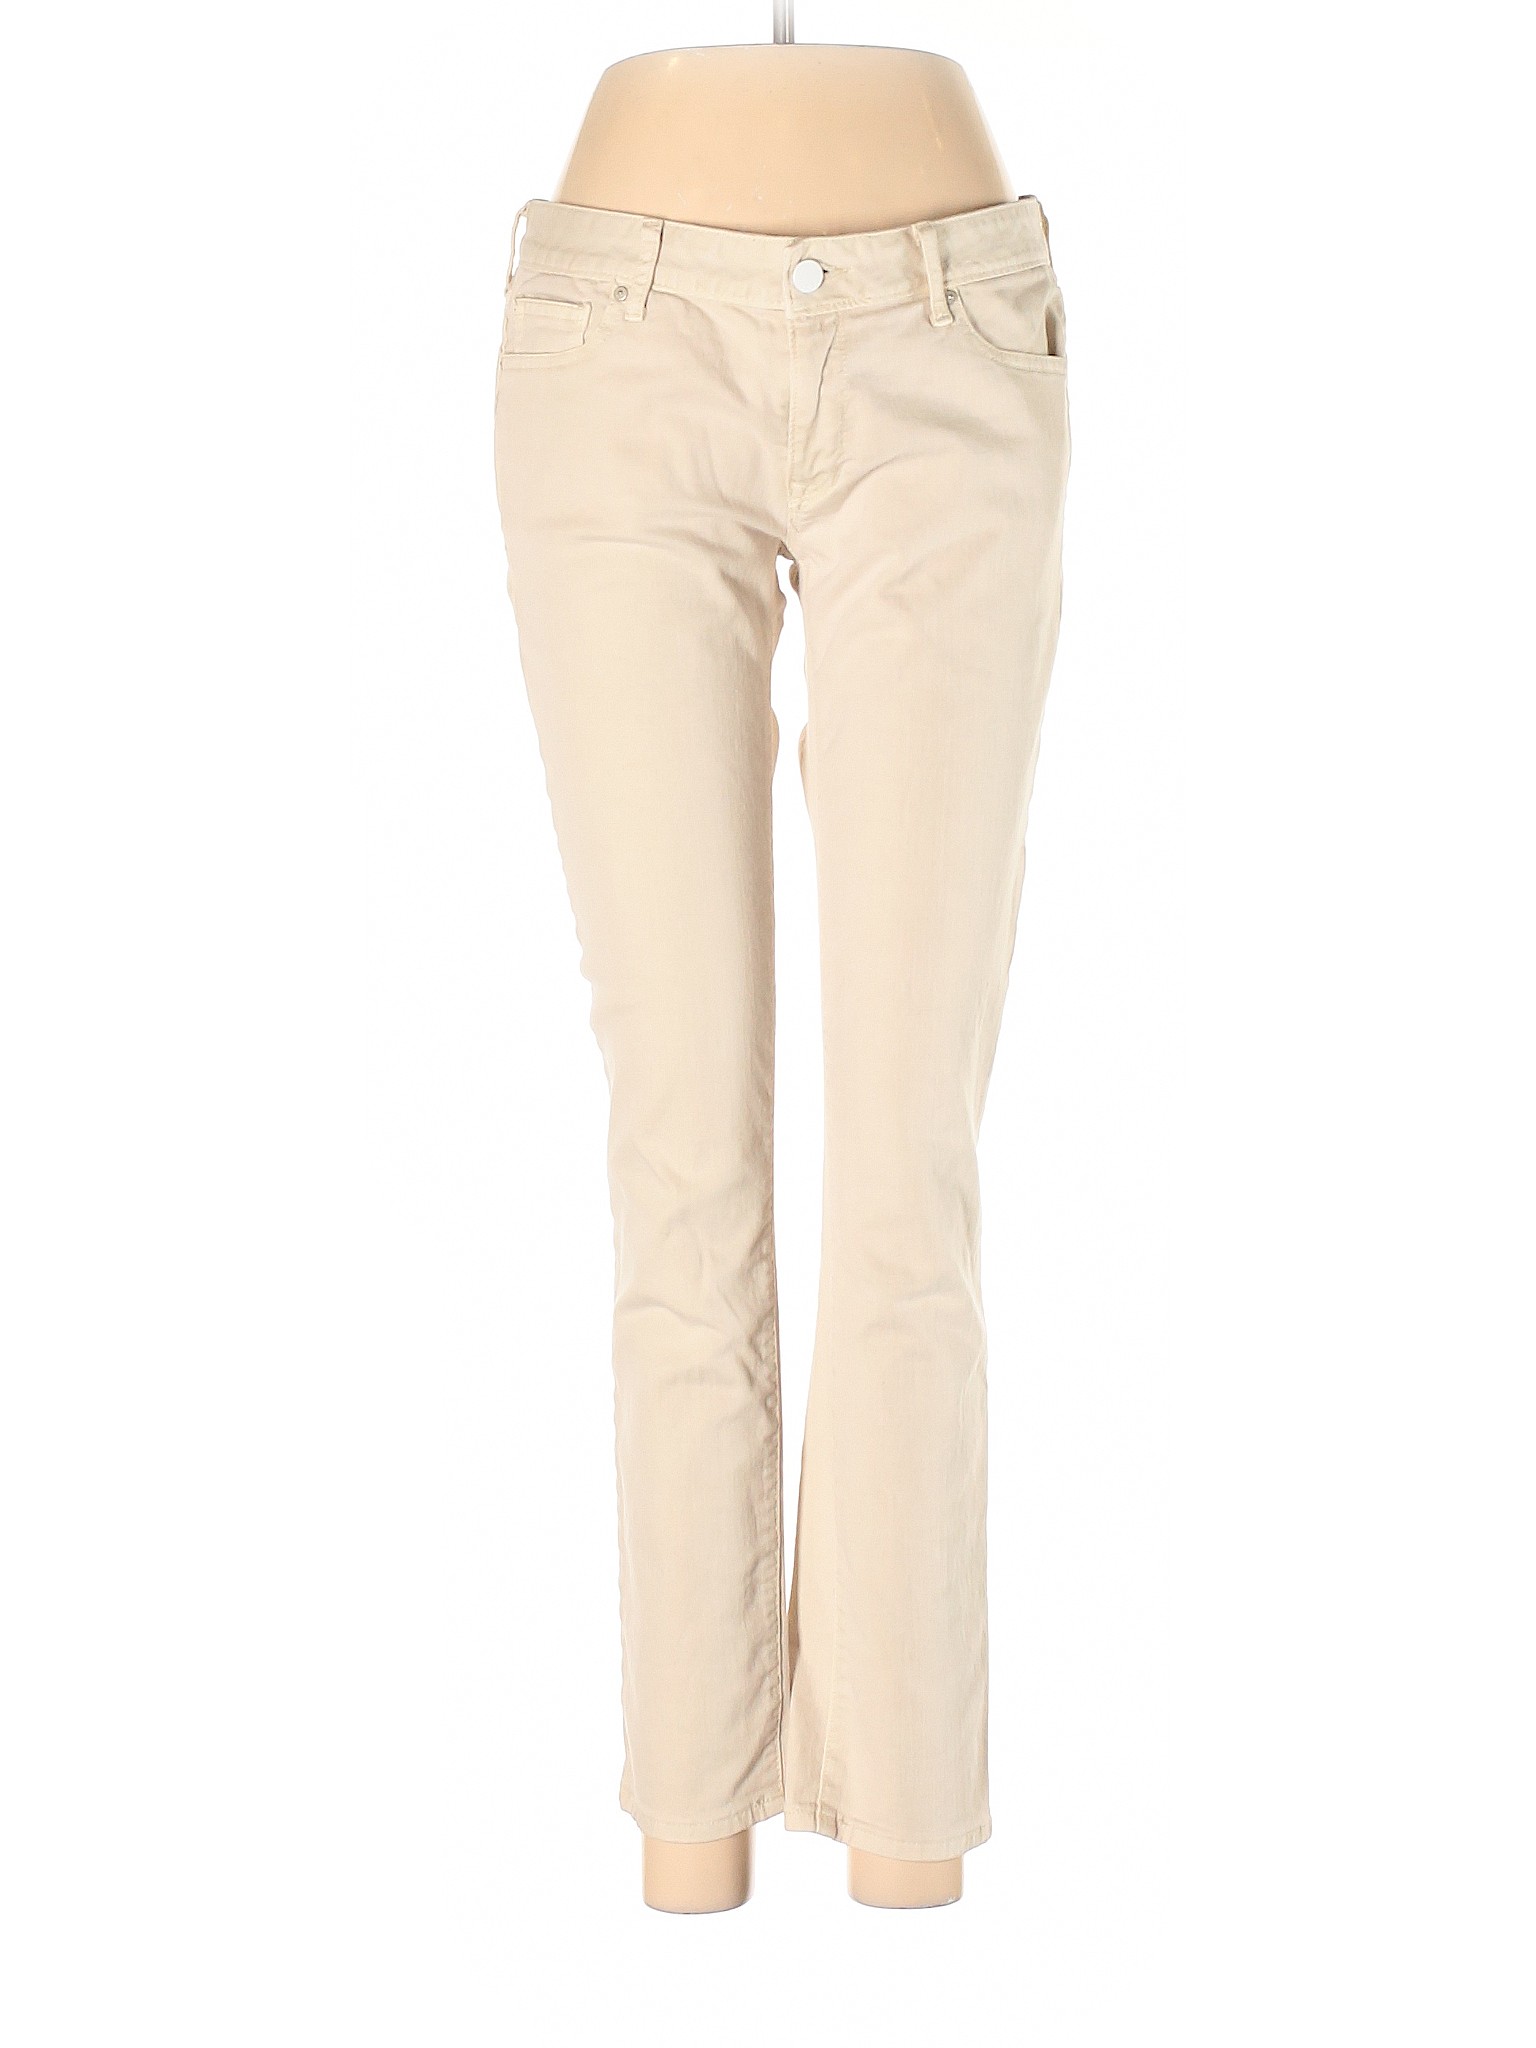 Gap Women Brown Jeans 27W | eBay